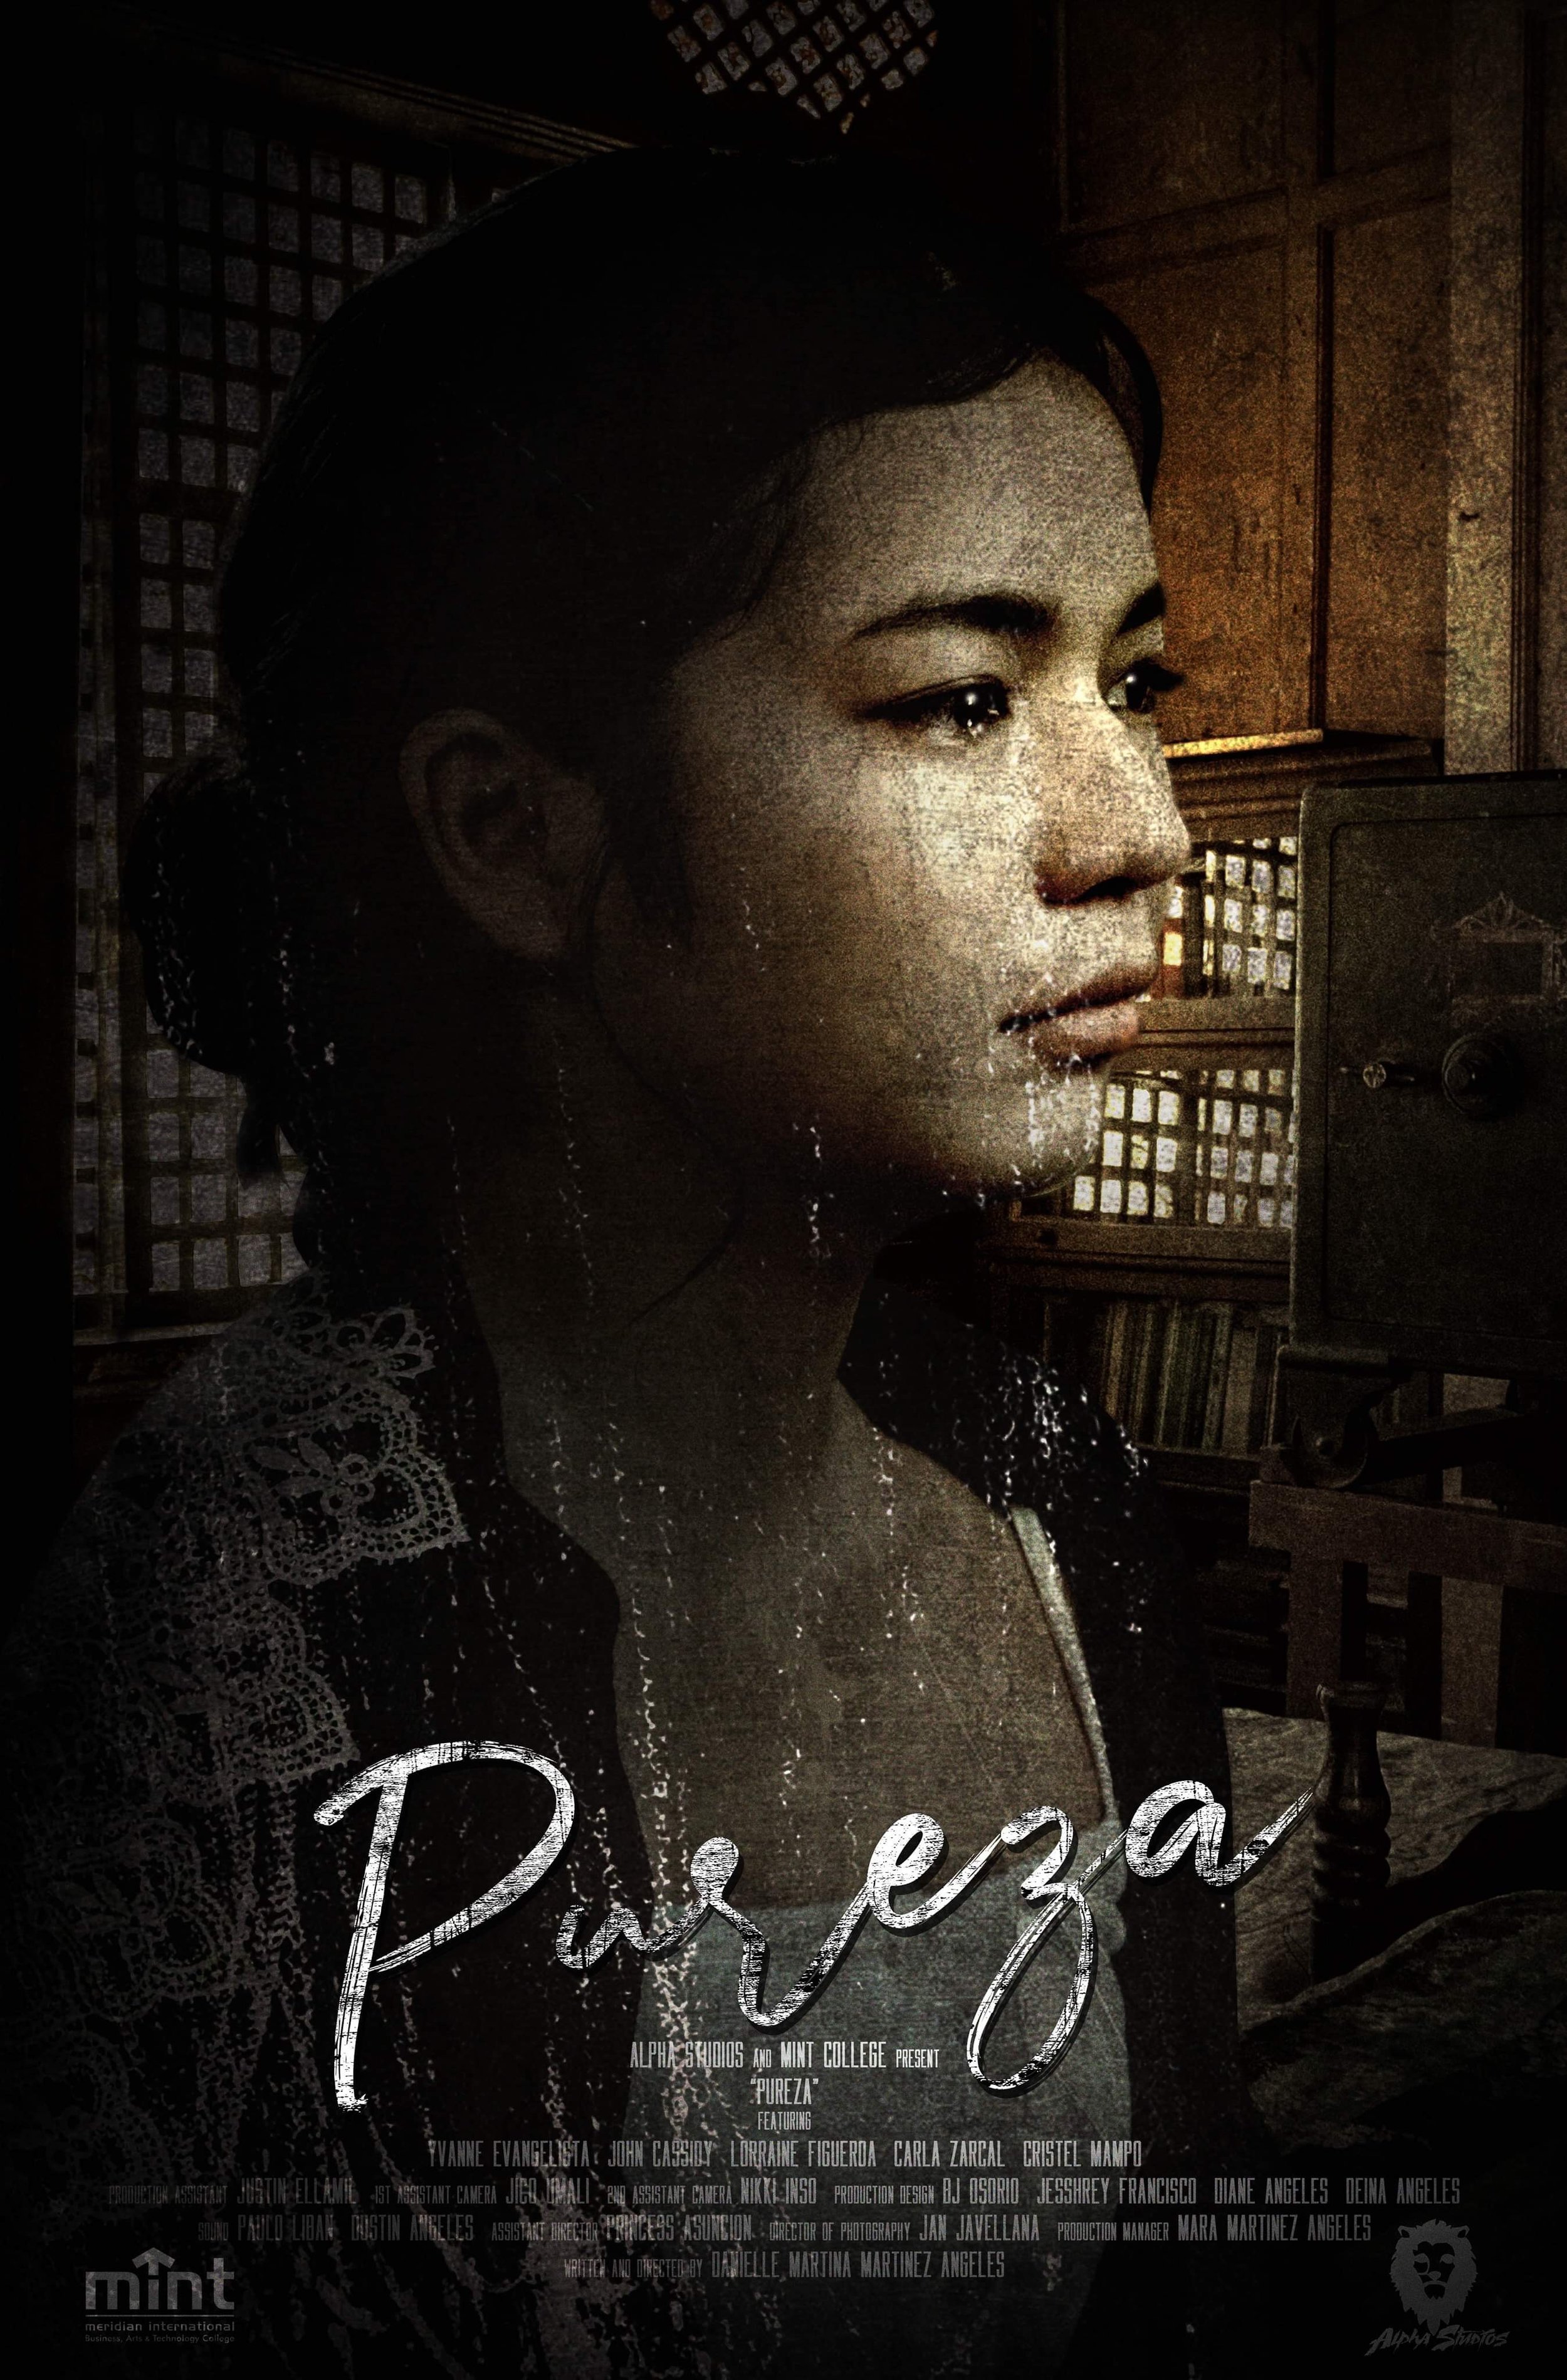 Pureza Poster.JPG